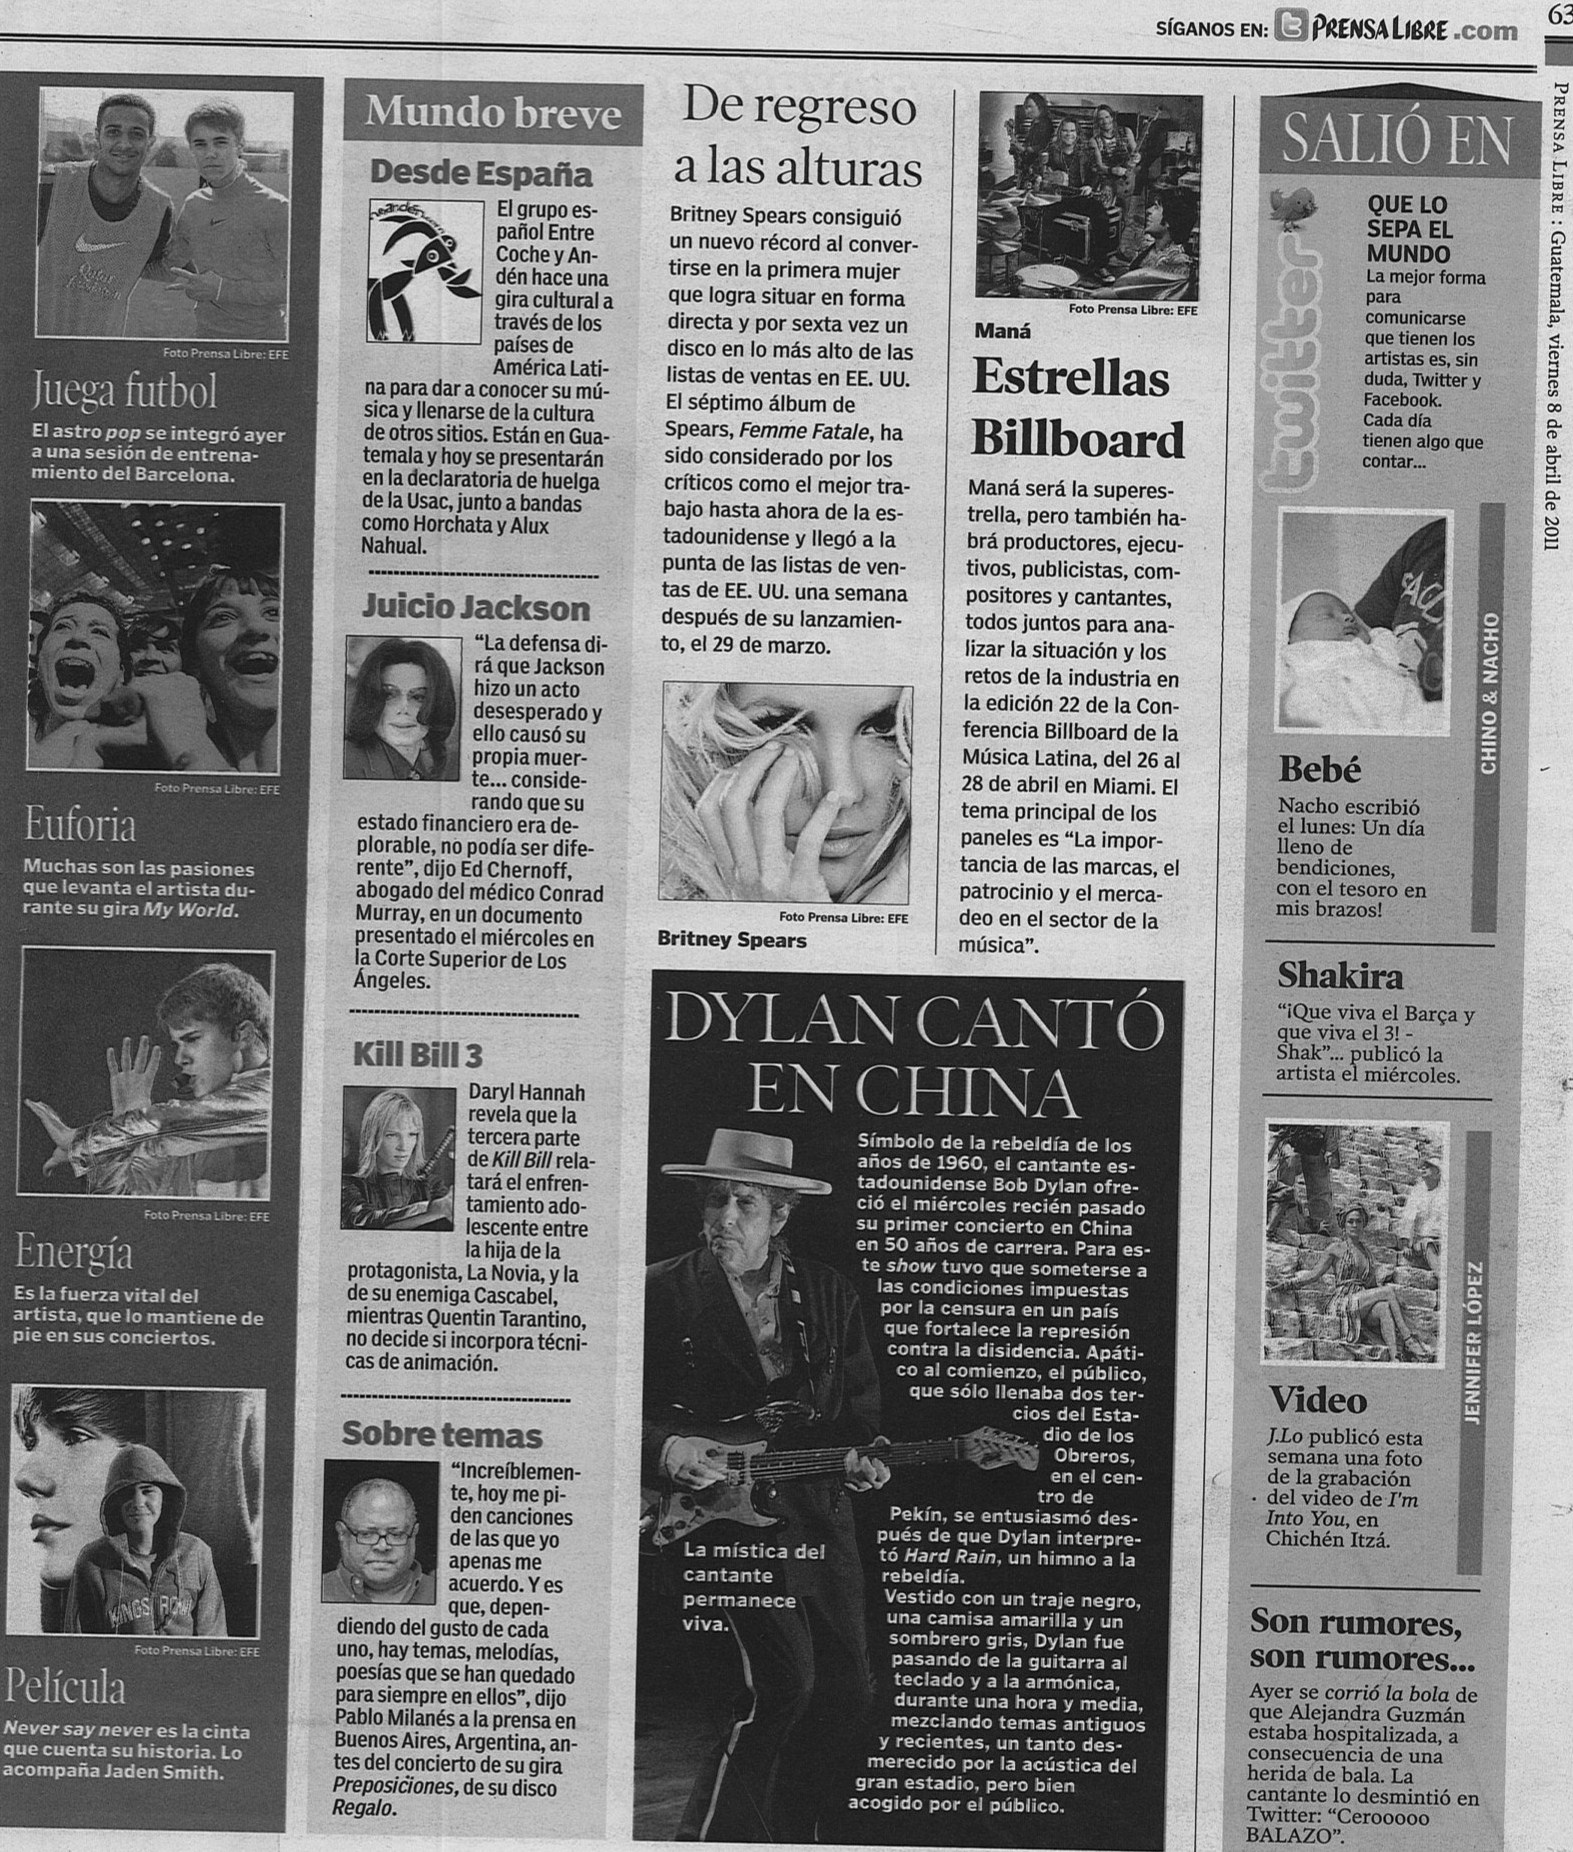 6. Prensa libre (Guatemala) 8 de abril de 2011